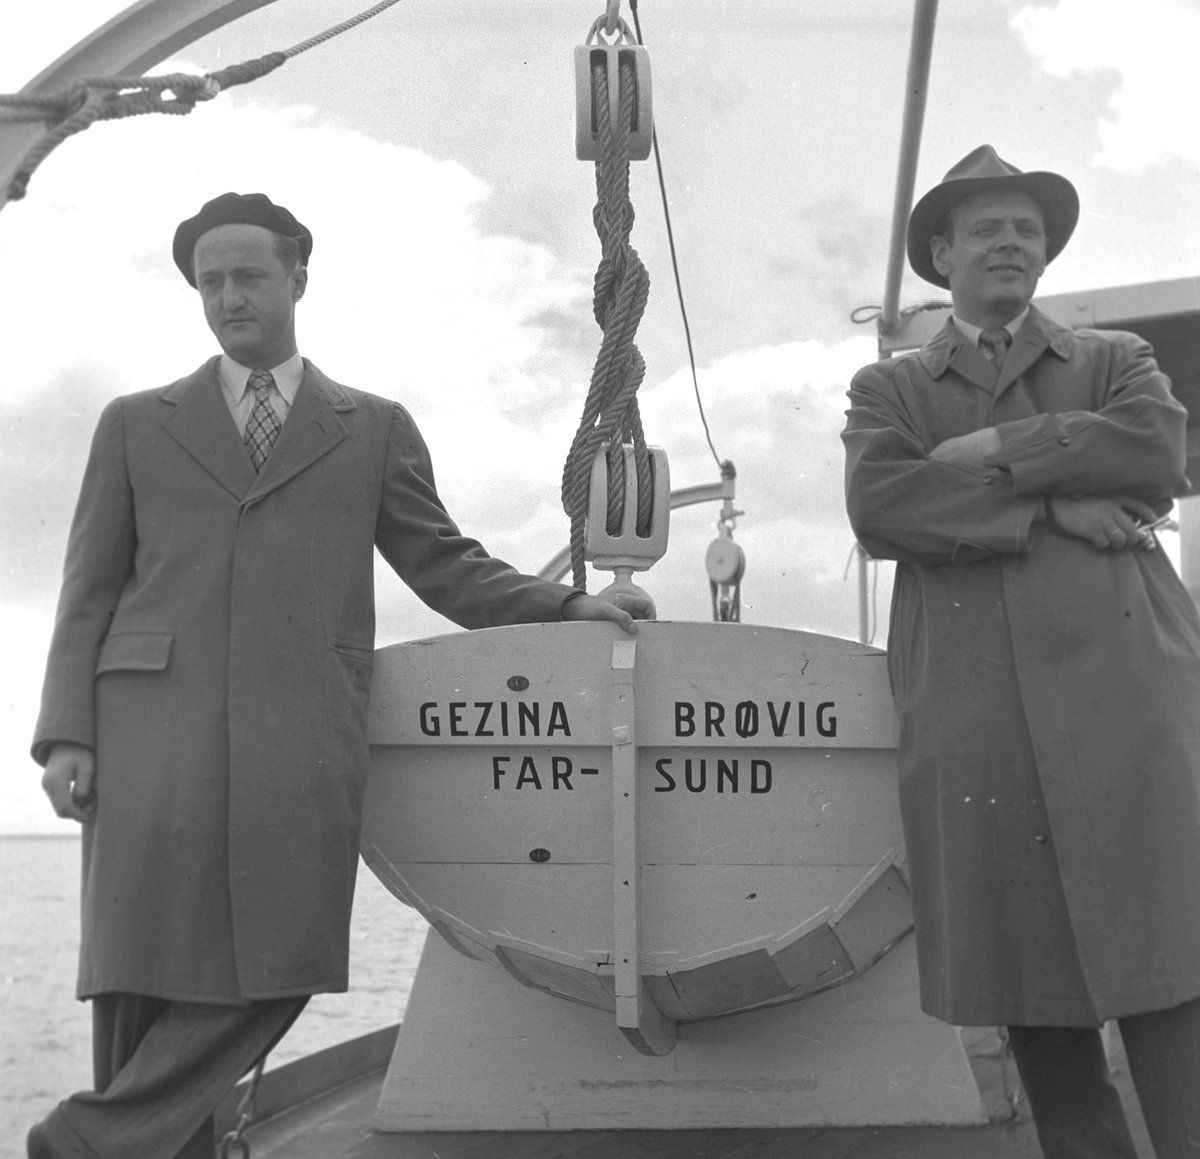 Fartyget "Gezina Brovig", Farsund.Gävle Varv anlades 1873. Efter en konkurs 1921 bildades Gefle Varfvs och Verkstads Nya AB, som bland annat tillverkade oljecisterner och utrustningar till pappersmassefabriker. På 1940-talet återupptogs skeppsbyggeriet.